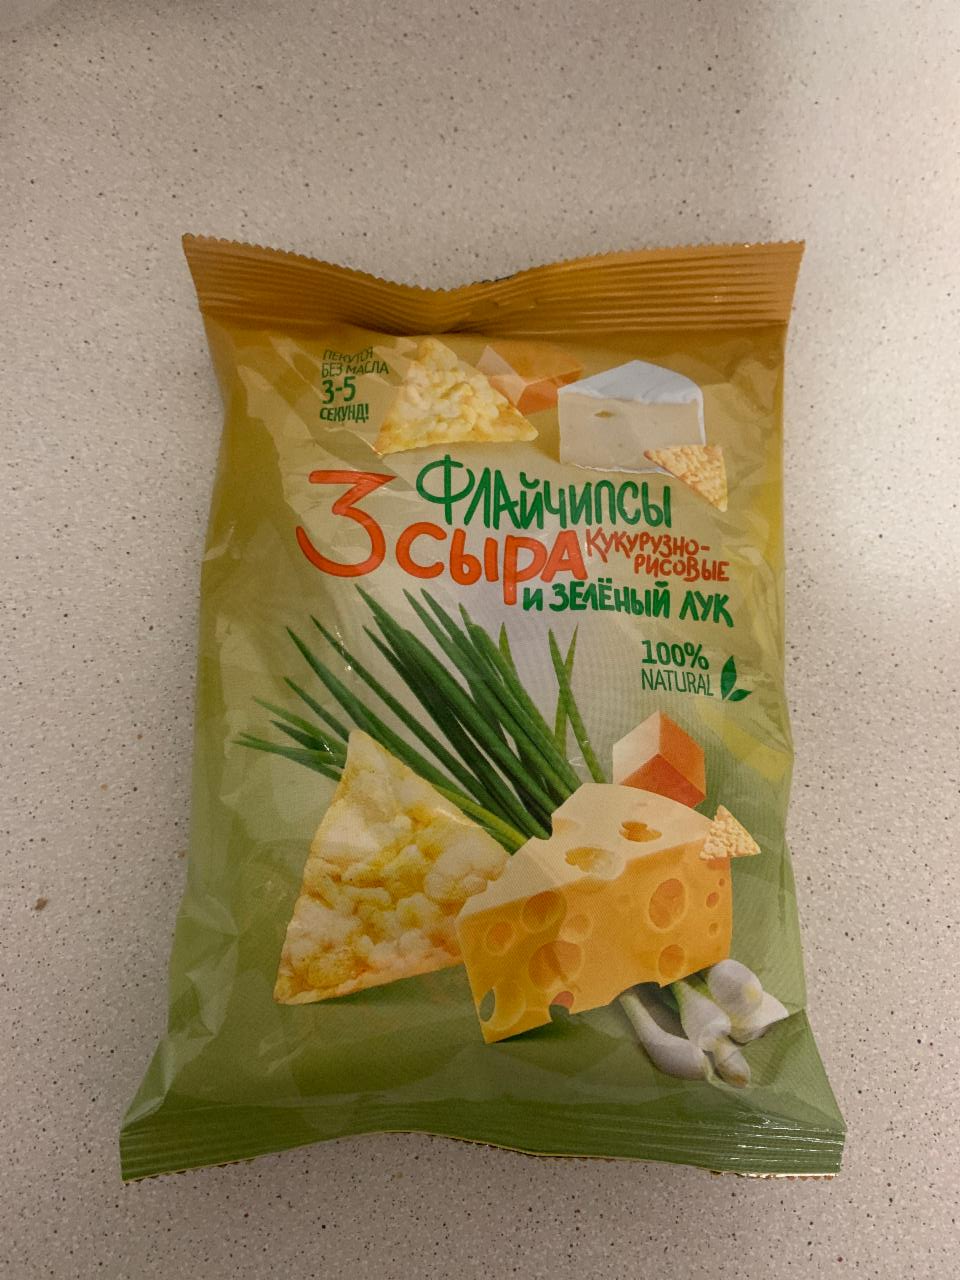 Фото - Флай чипсы 3 сыра и зеленый лук ВкусВилл